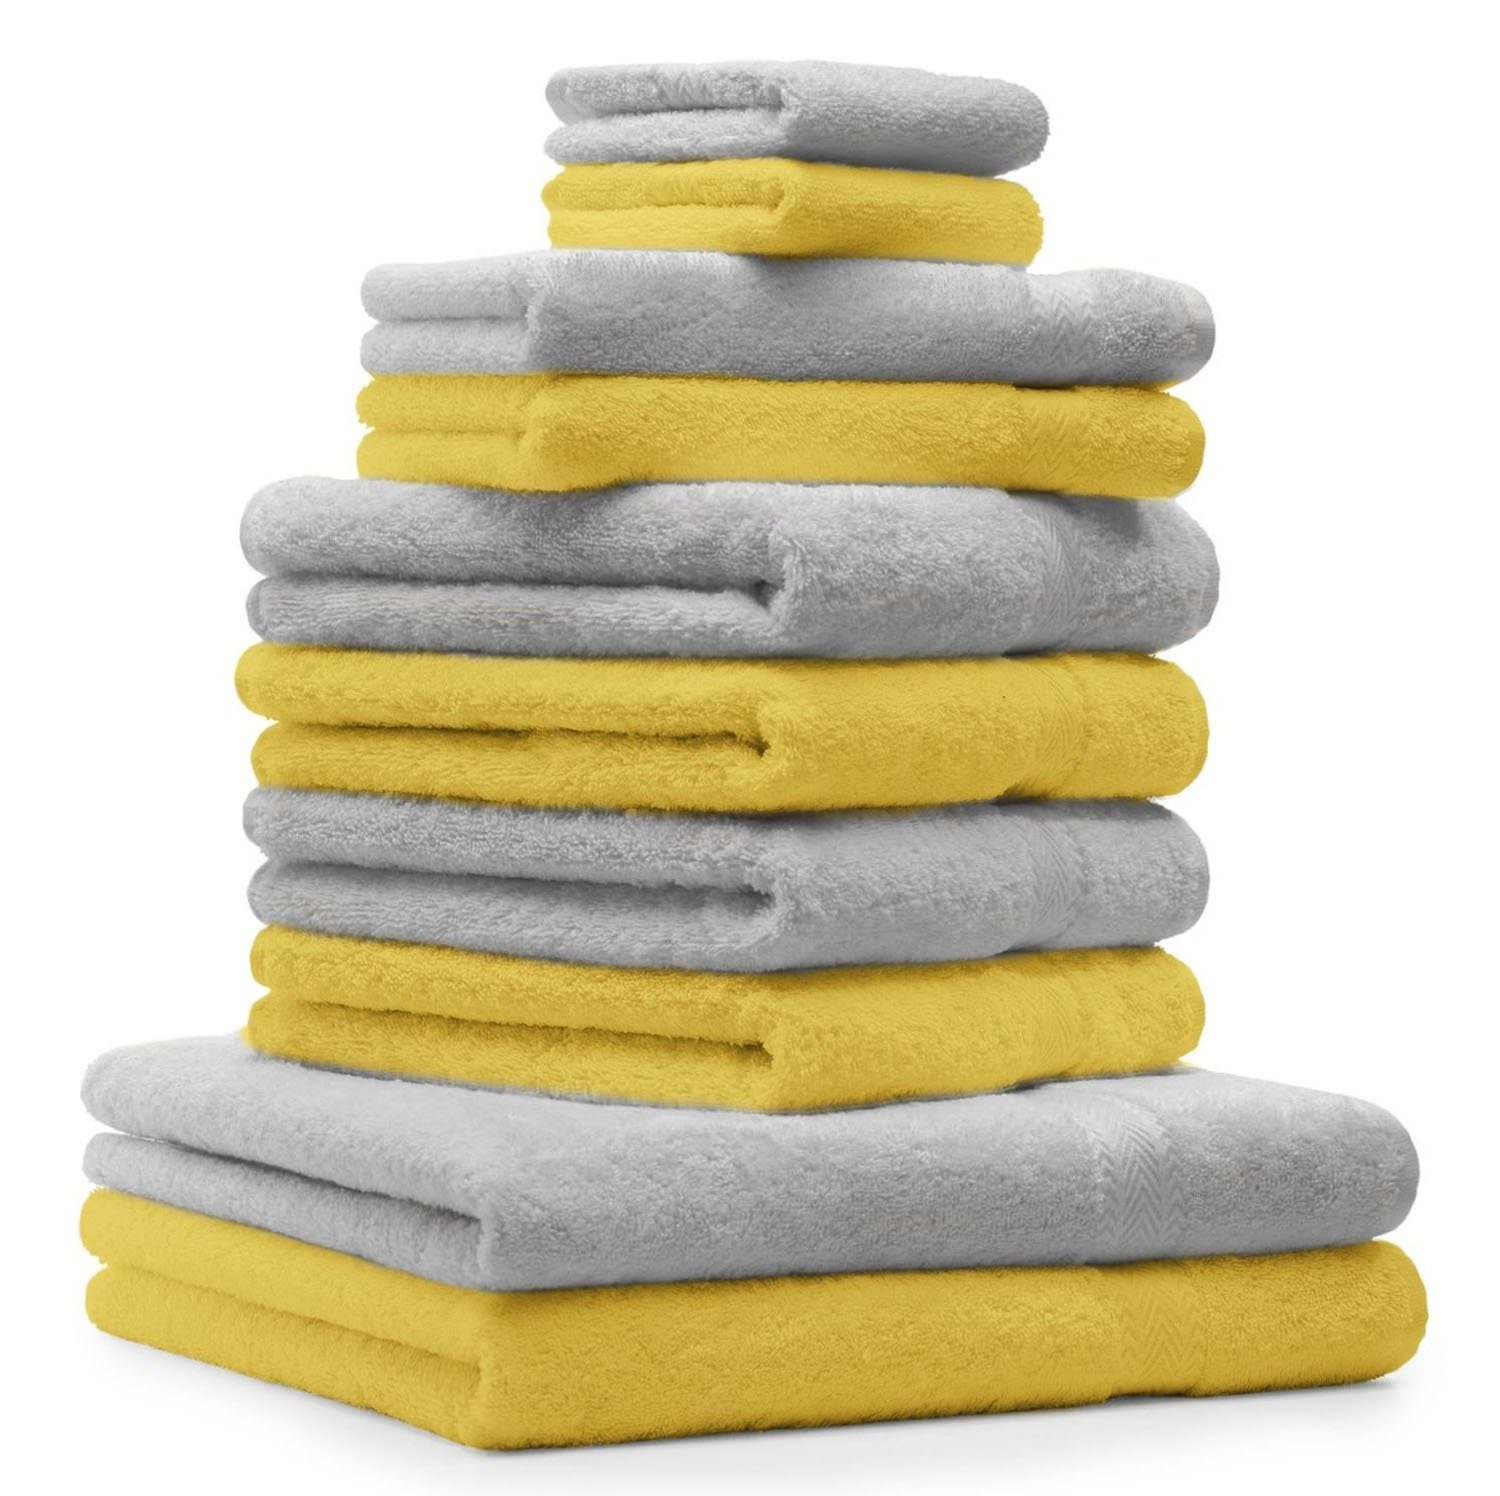 Betz Handtuch Set 10-TLG. Handtuch-Set Classic Farbe gelb und silbergrau, 100% Baumwolle